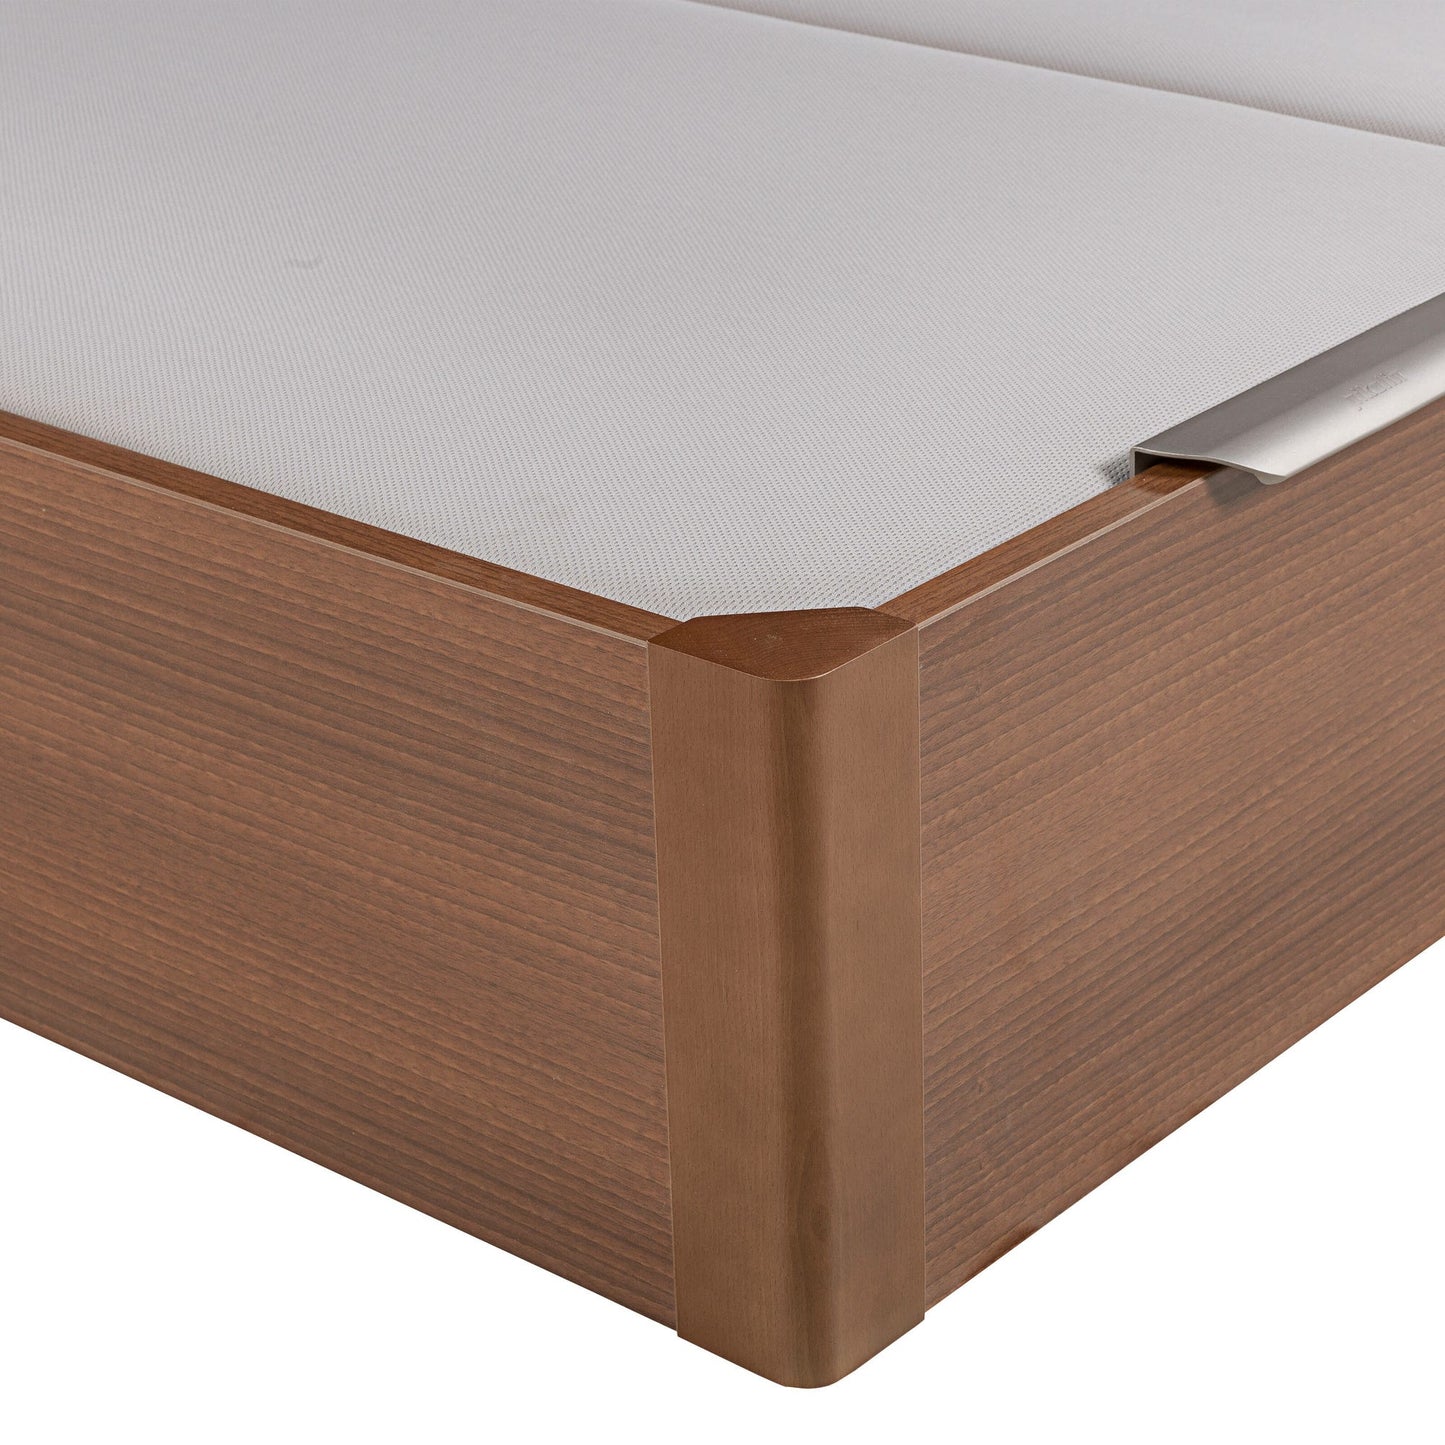 Canapé abatible de madera de tapa doble de color cerezo - DESIGN - 200x210